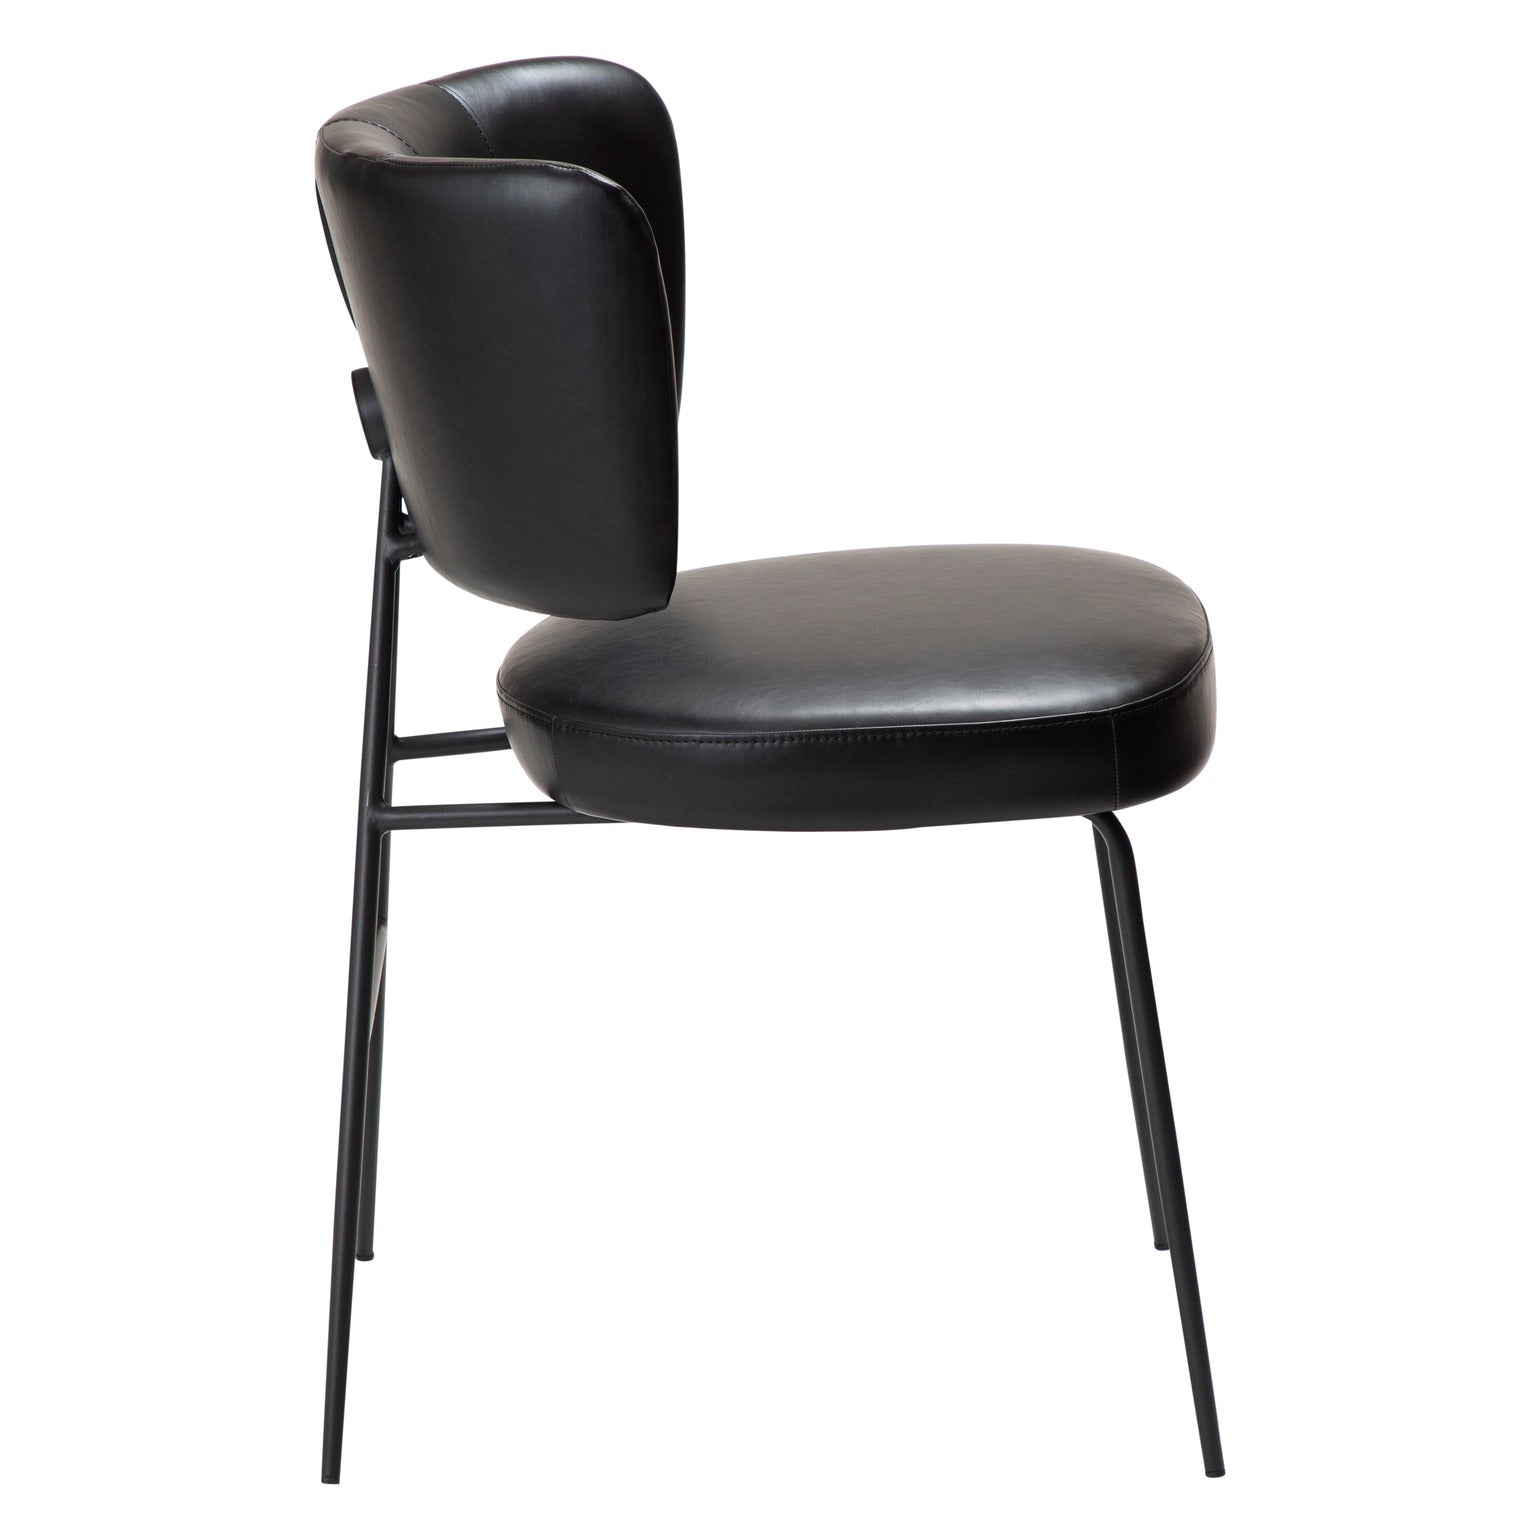 ROOST kėdė, juoda spalva